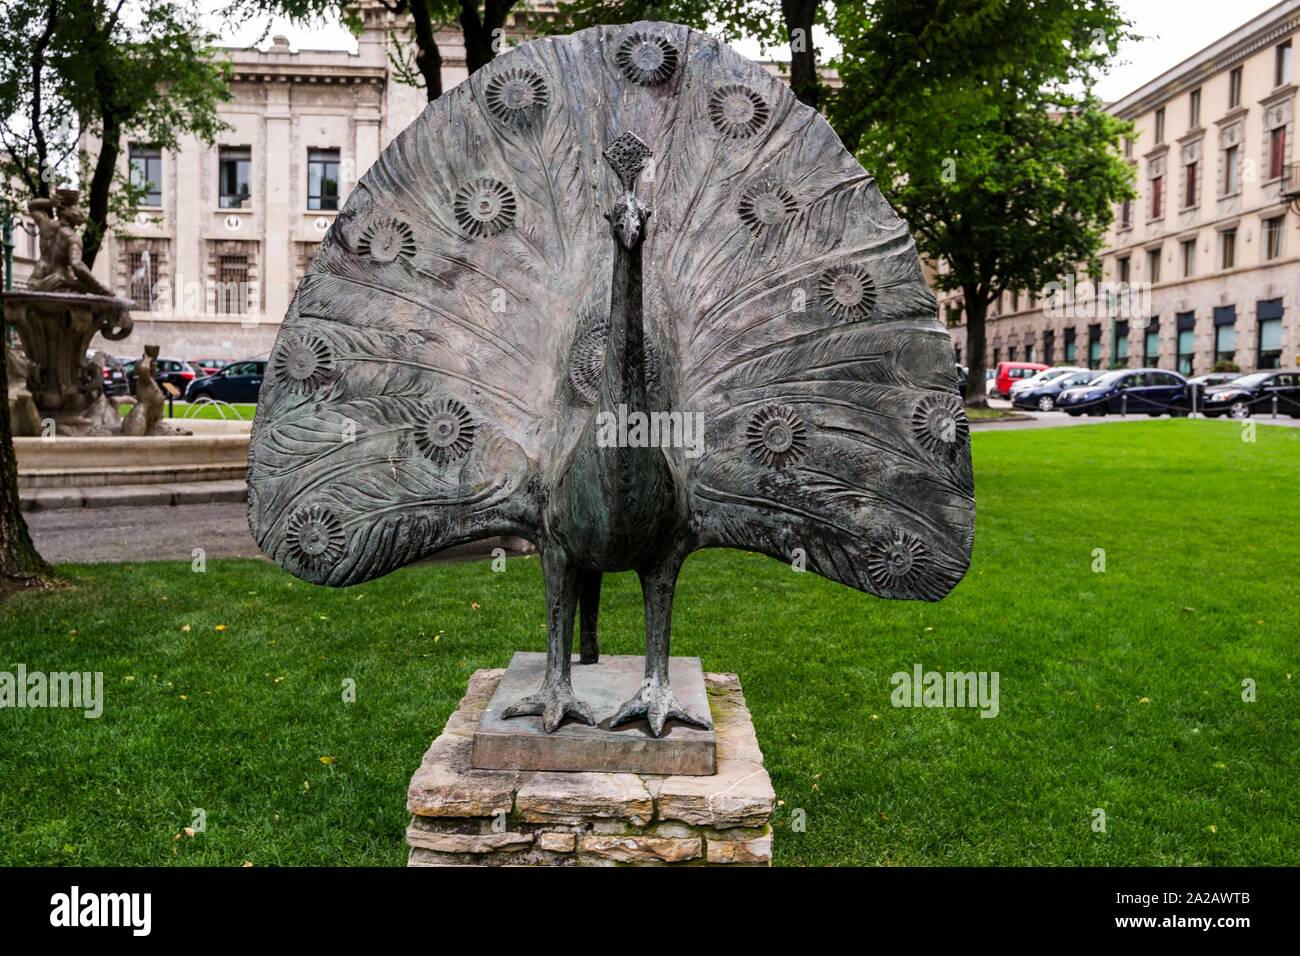 Peacock sculpture in Piazza Dante. Lower City (Città Bassa), Bergamo, Lombardy, Italy, Europe. Stock Photo